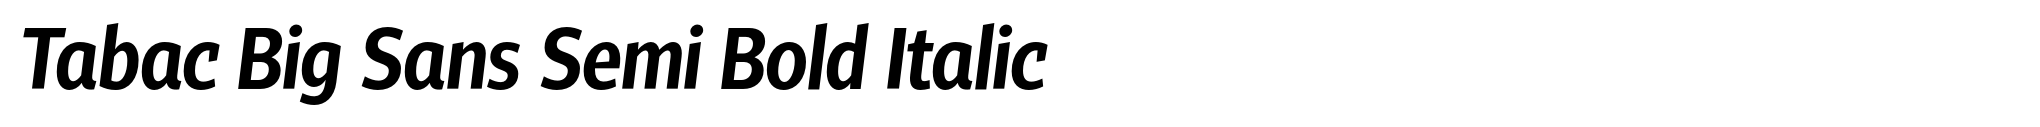 Tabac Big Sans Semi Bold Italic image